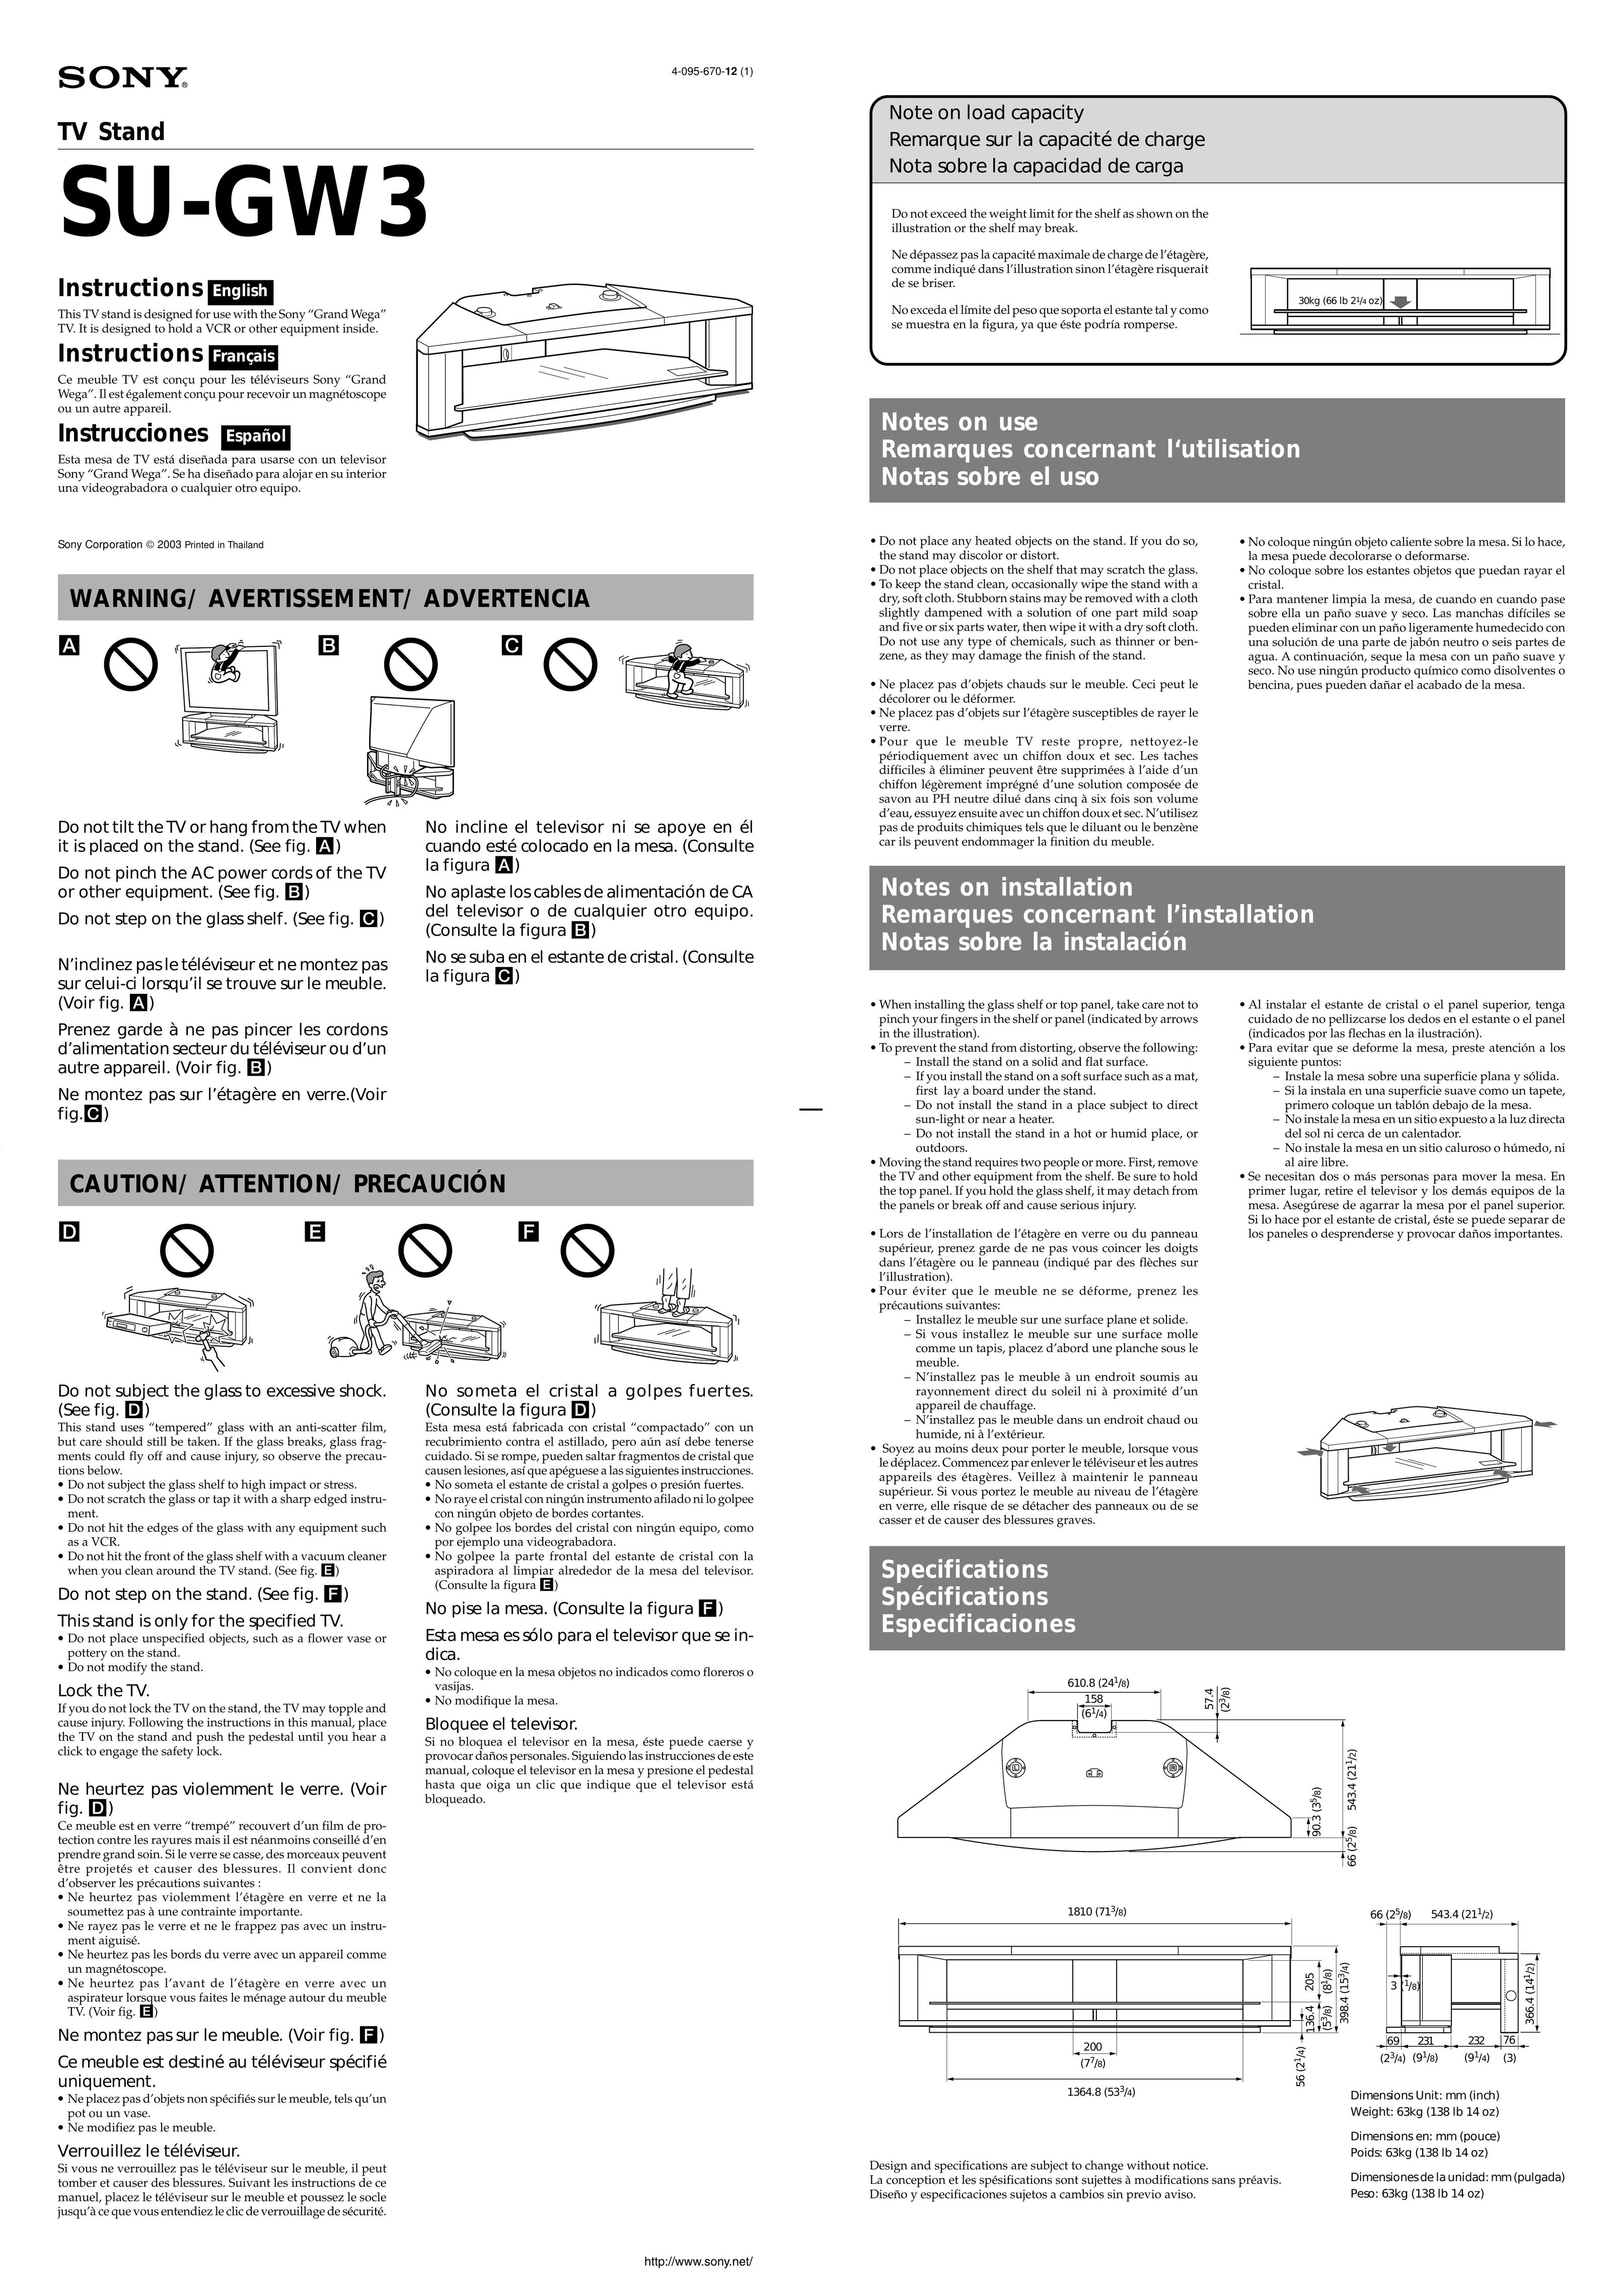 Sony SU-GW3 Indoor Furnishings User Manual